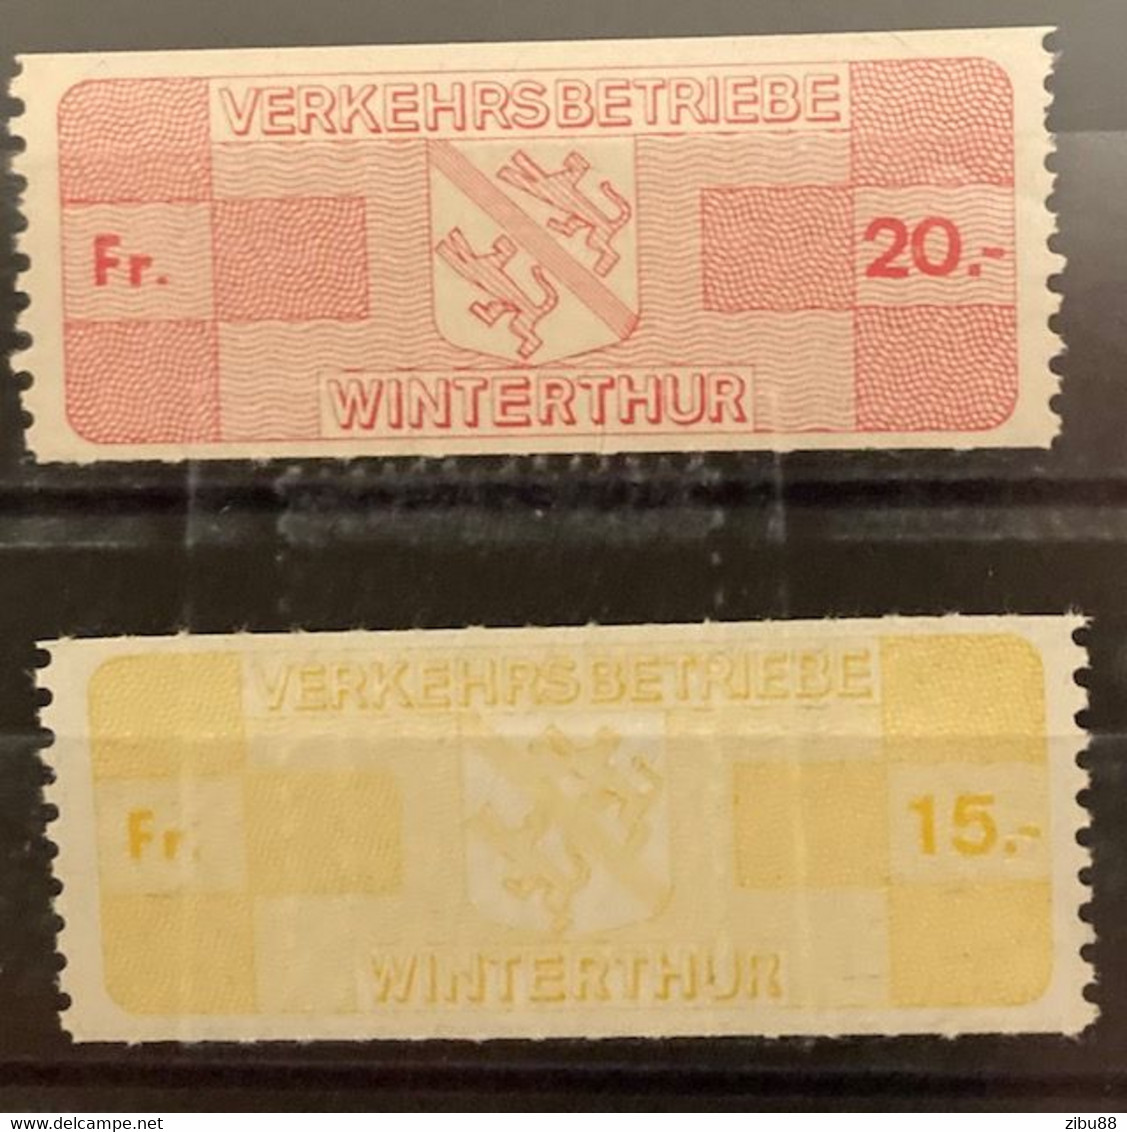 Marken/Gebührenmarken Verkehrsbetriebe Winterthur - # Revenue Stamp, Railway Switzerland - Railway